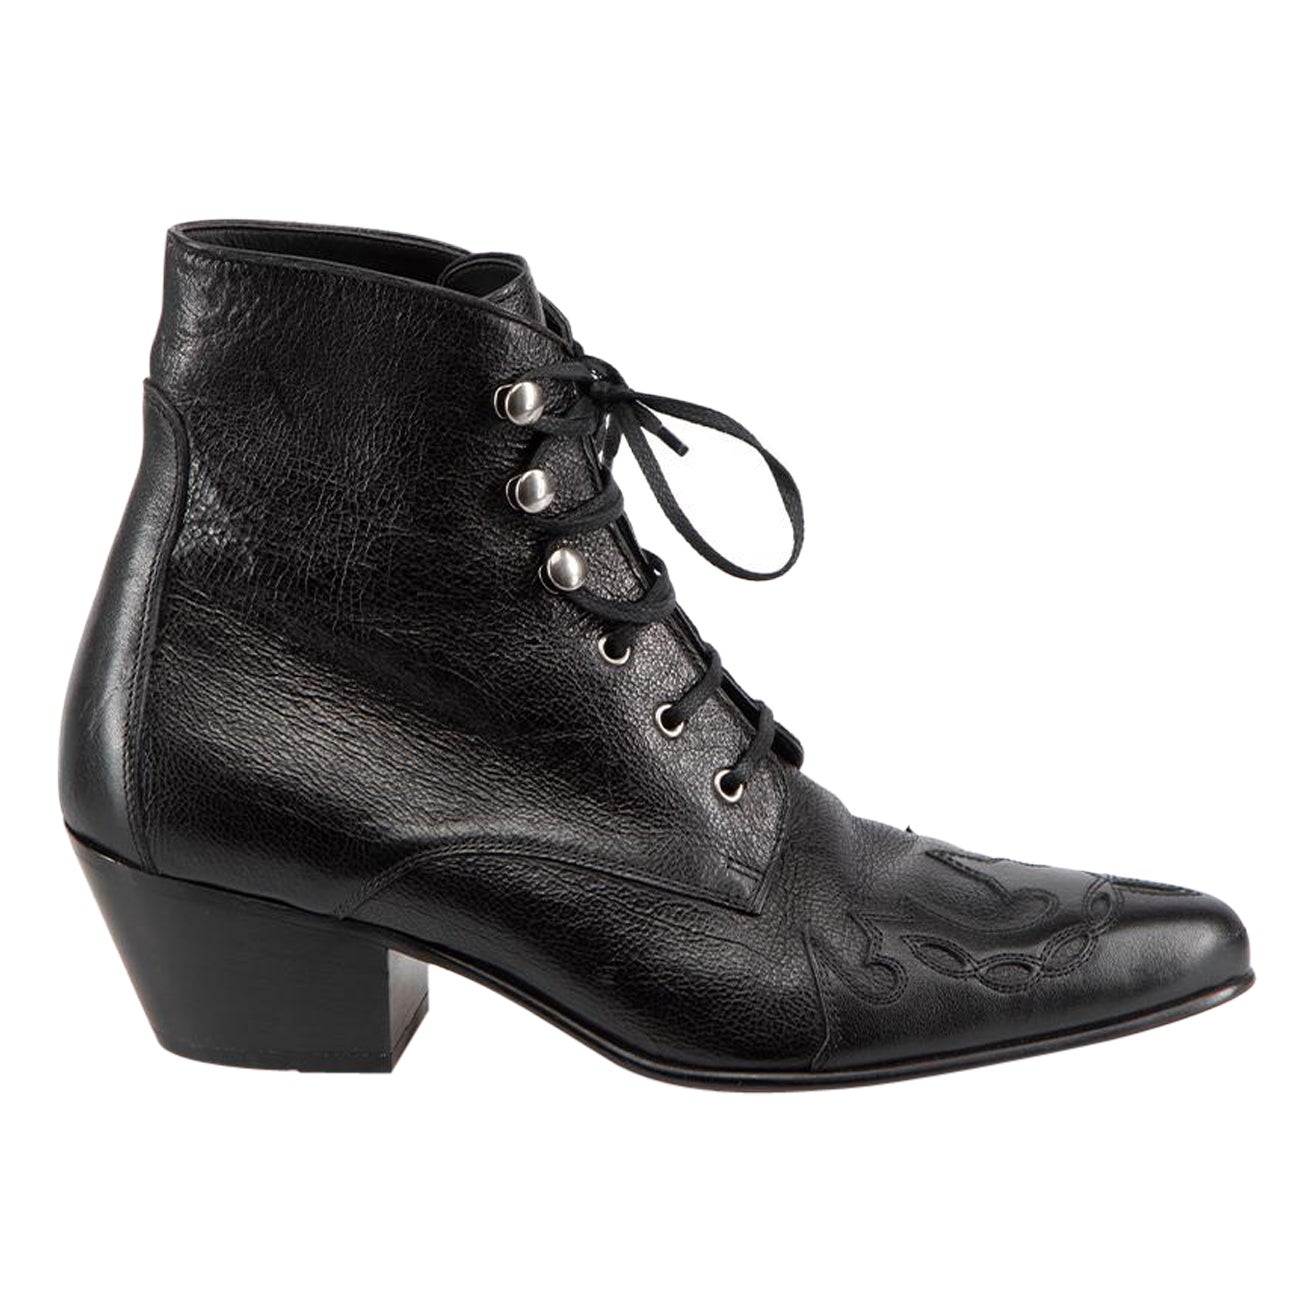 Saint Laurent Black Leather Susan Ankle Boots Size IT 37.5 For Sale